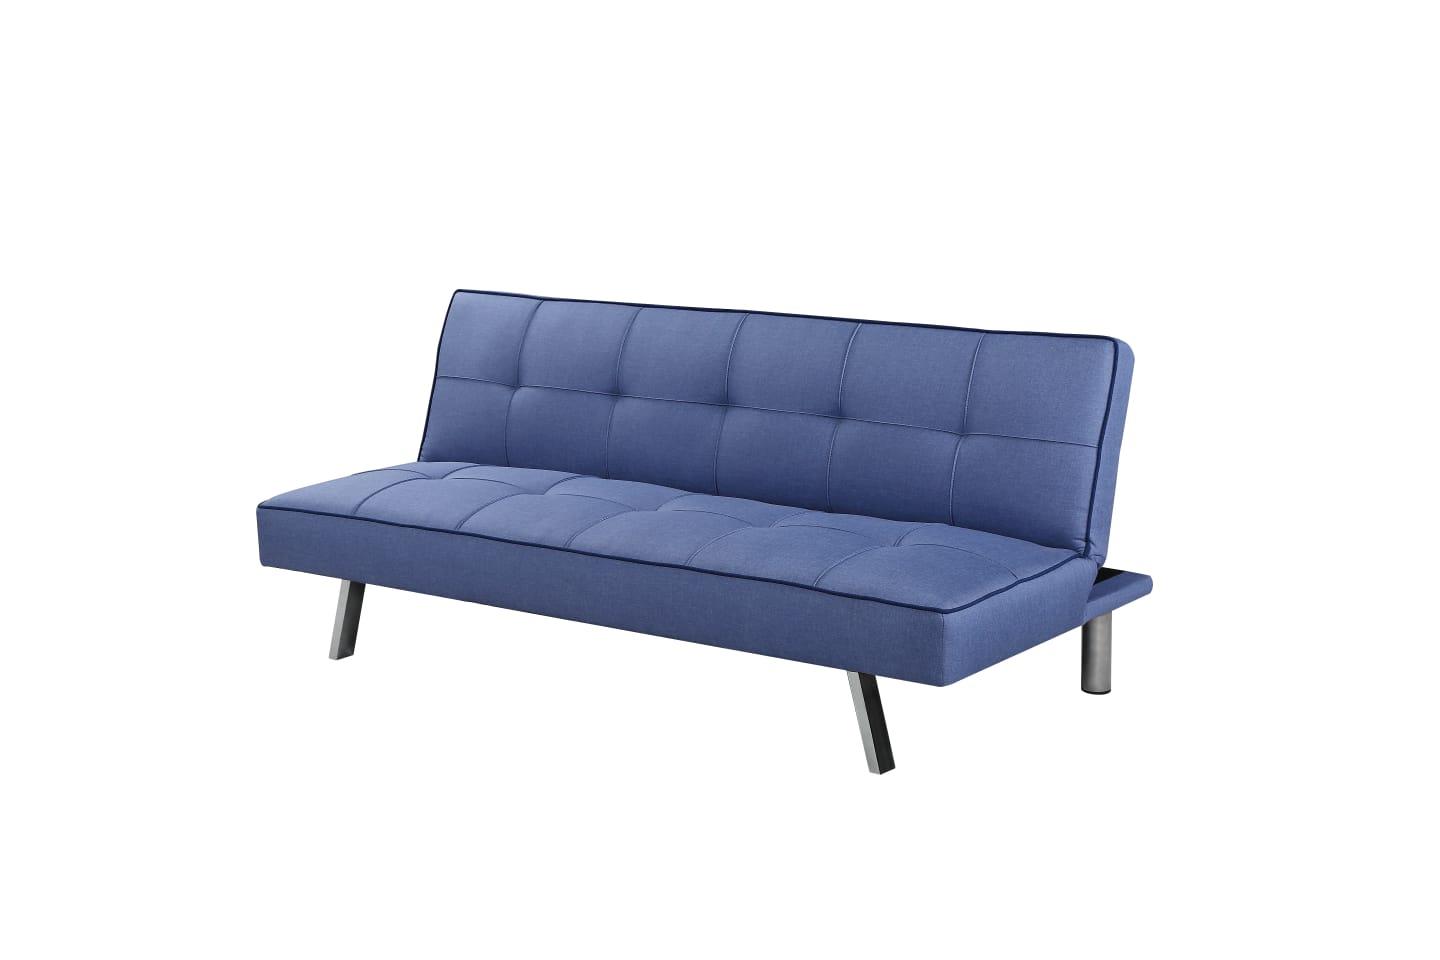 ספה תלת מושבית נפתחת למיטה תלת מושבית דגם מיאמי צבע כחול **חוזר למלאי 12/1**